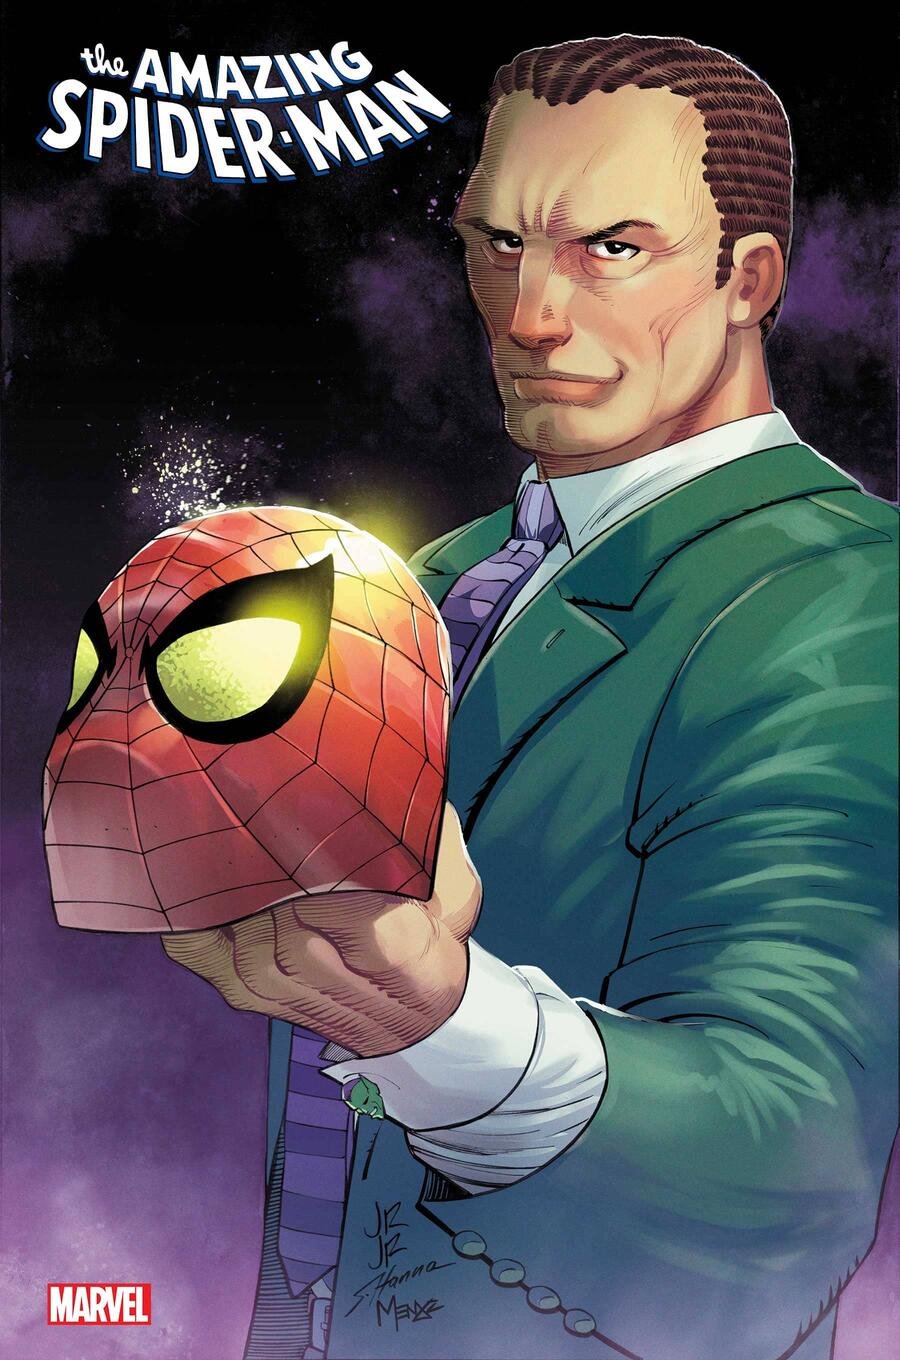 Cover di Amazing Spider-Man 7 di John Romita Jr